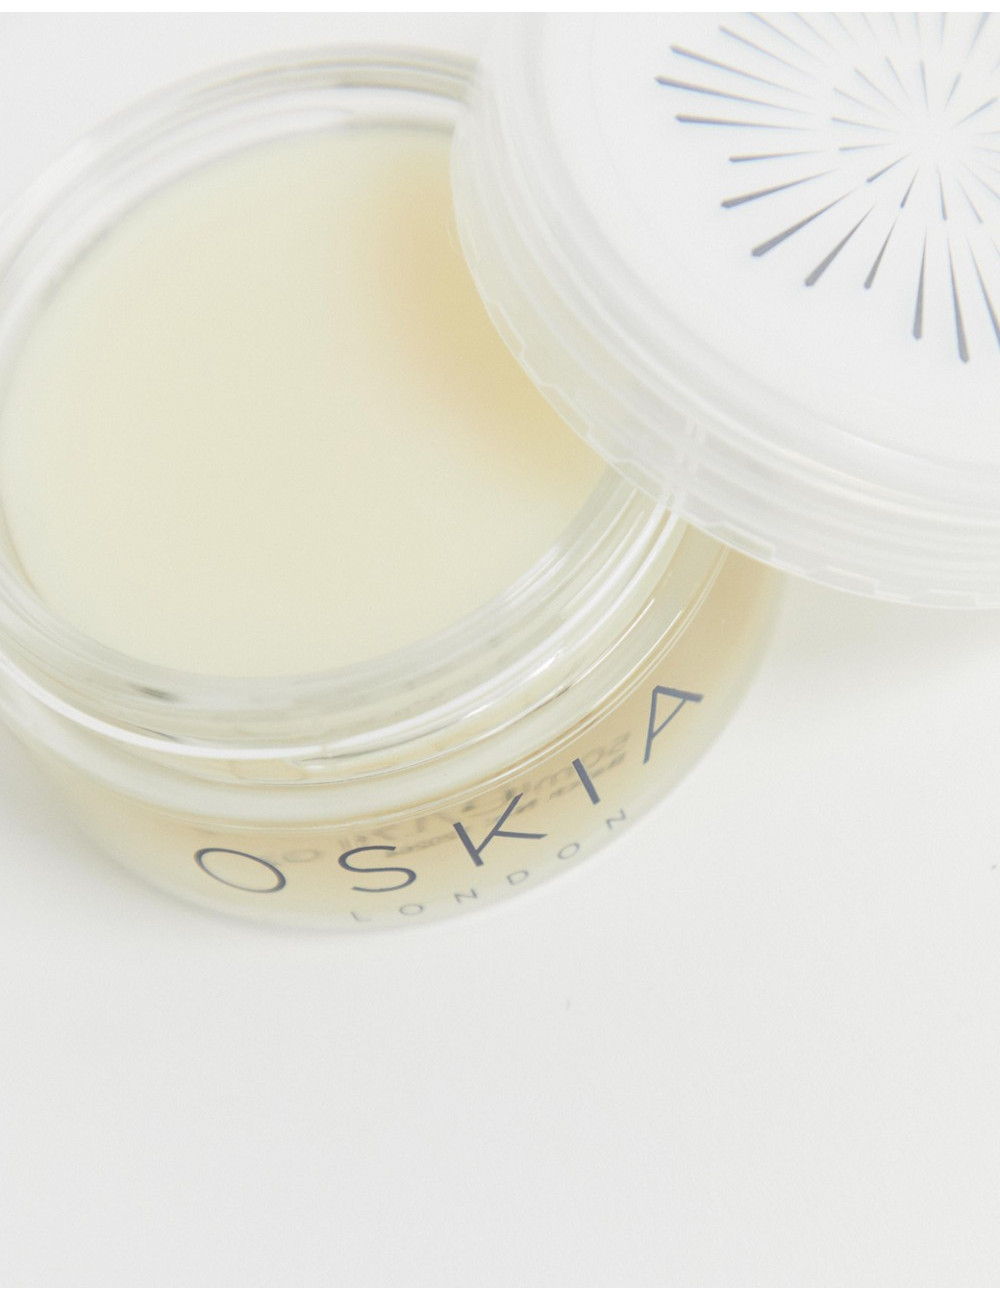 OSKIA Micro Exfoliating Balm